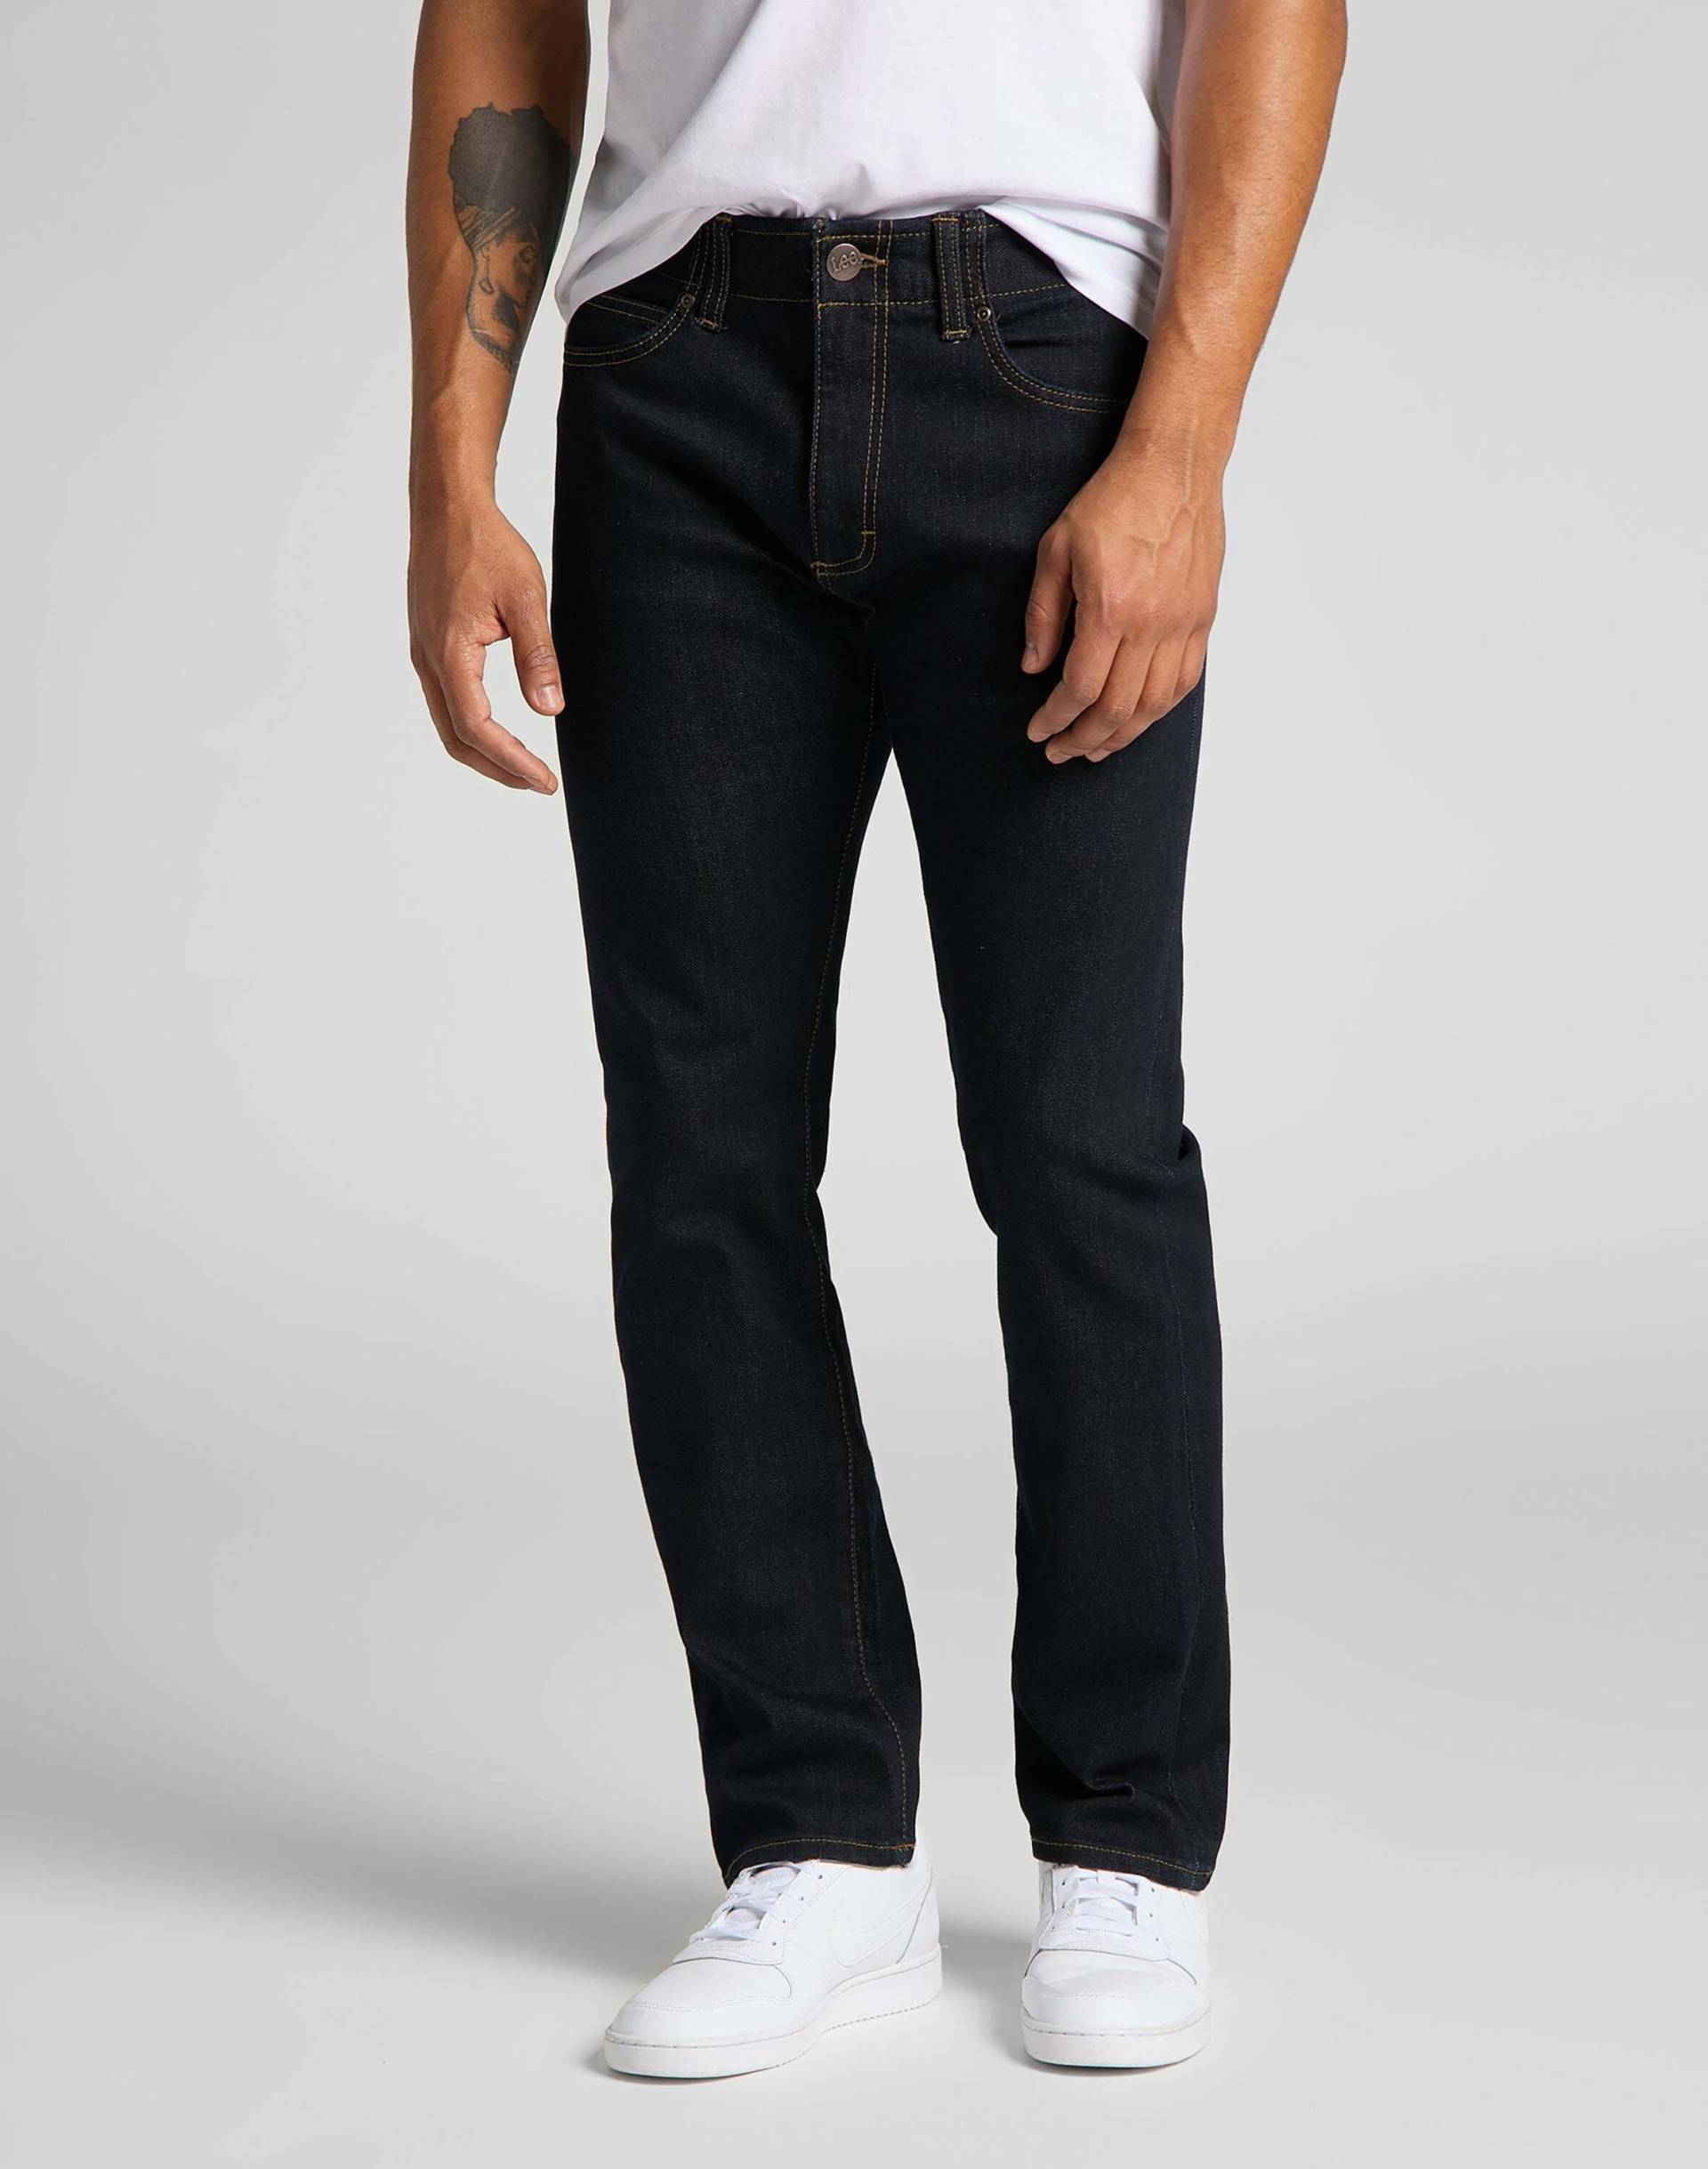 Jeans Slim Fit Mvp Herren Blau L34/W40 von Lee